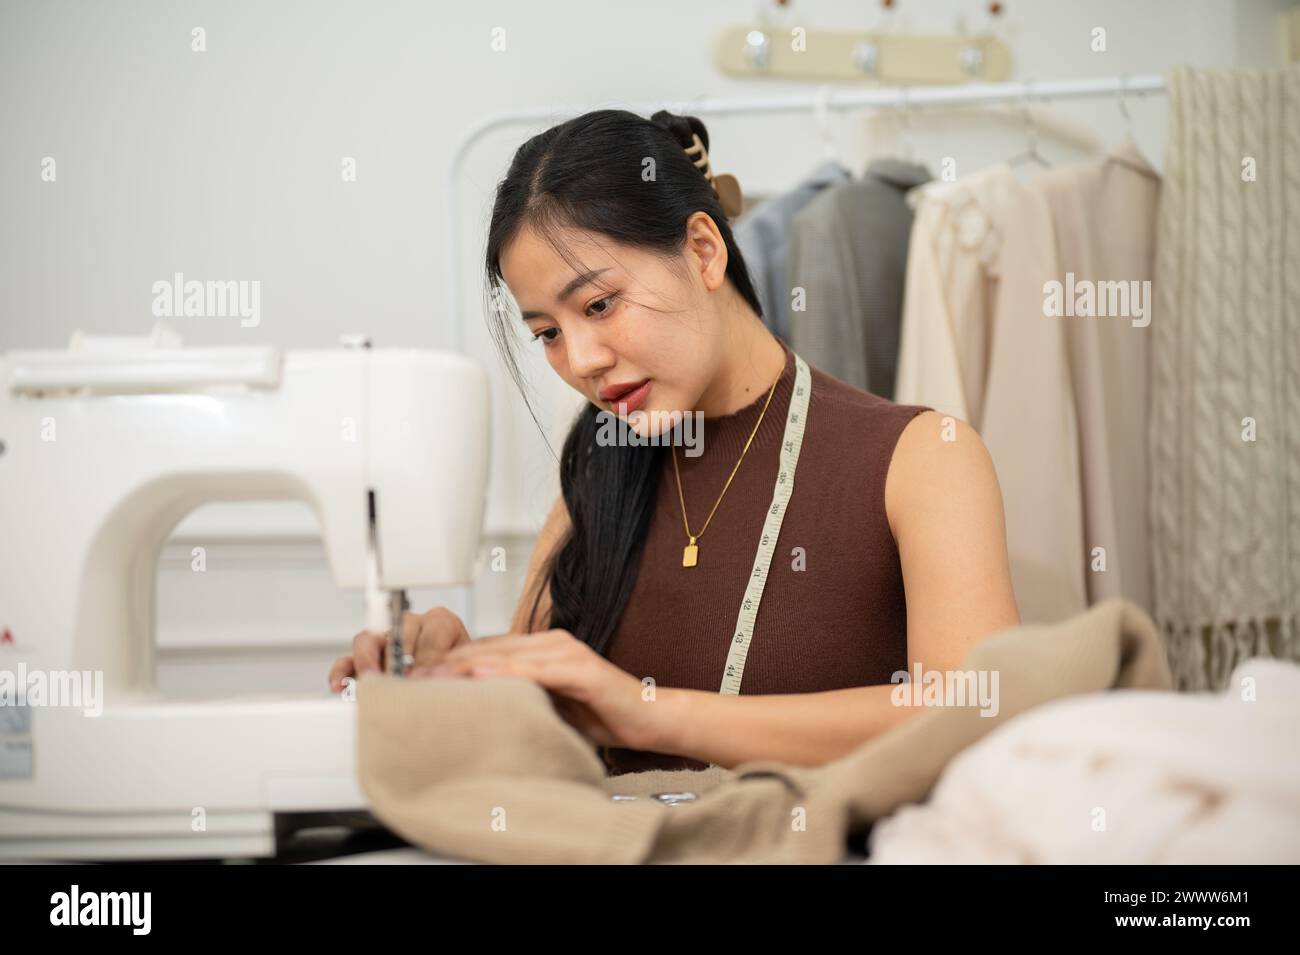 Una sastre asiática profesional o diseñadora de moda está cosiendo un vestido con una máquina de coser, trabajando en su nueva colección de ropa en su estudio. Foto de stock